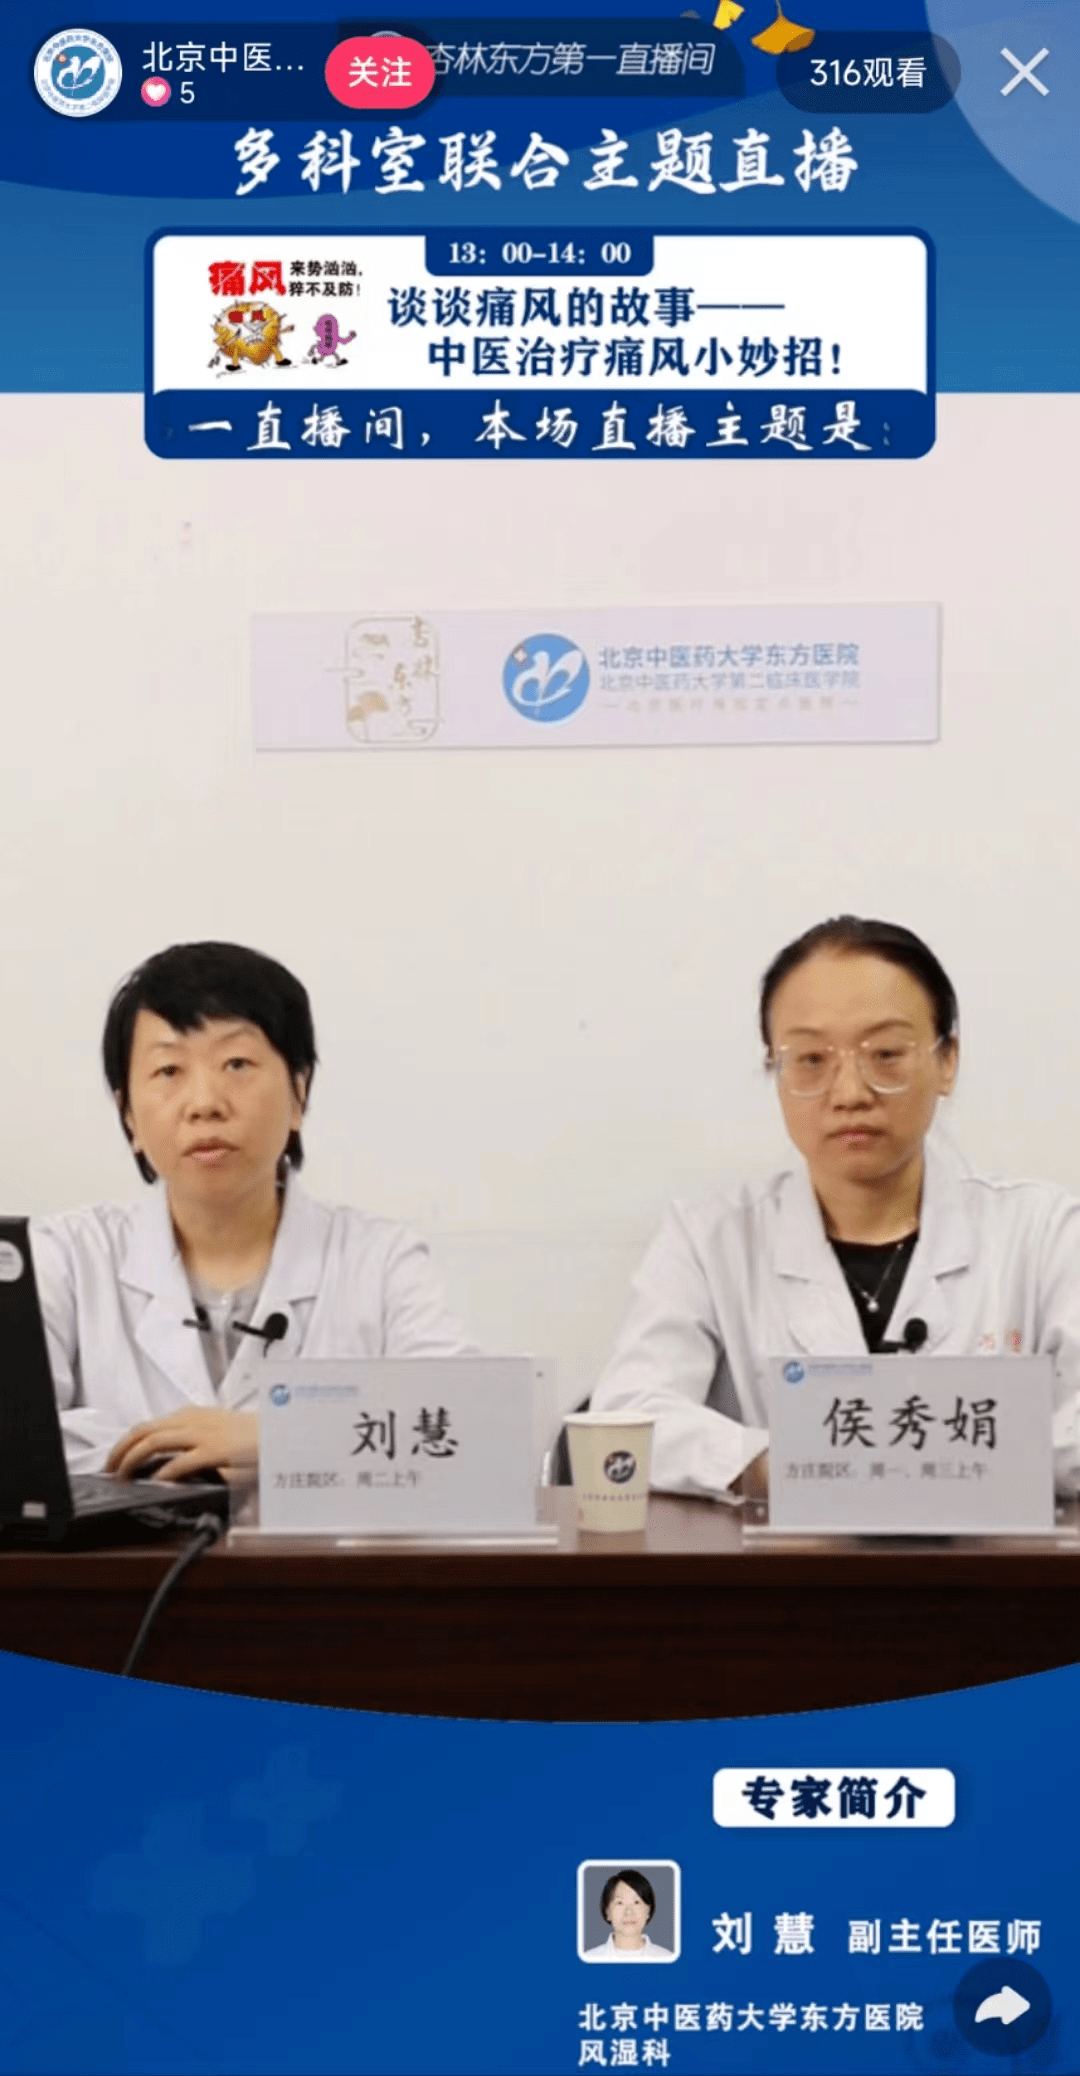 包含北京中医药大学东方医院跑腿挂号预约，合理的价格细致的服务的词条